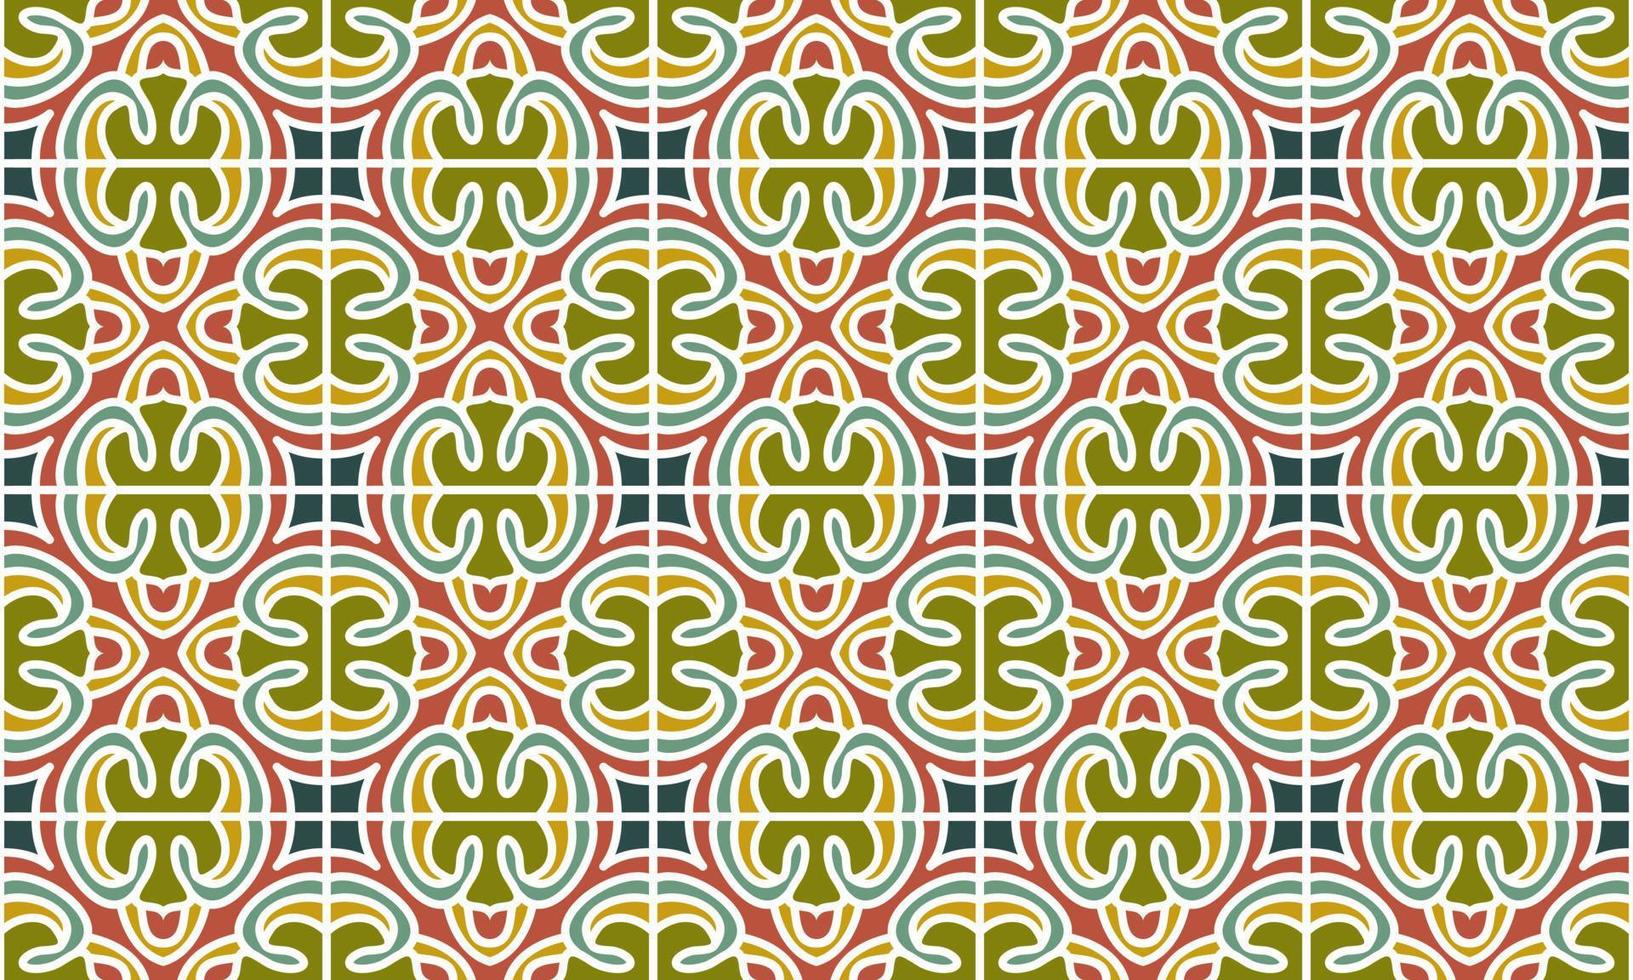 ethnische Muster-Mandala-Hintergrund vektor